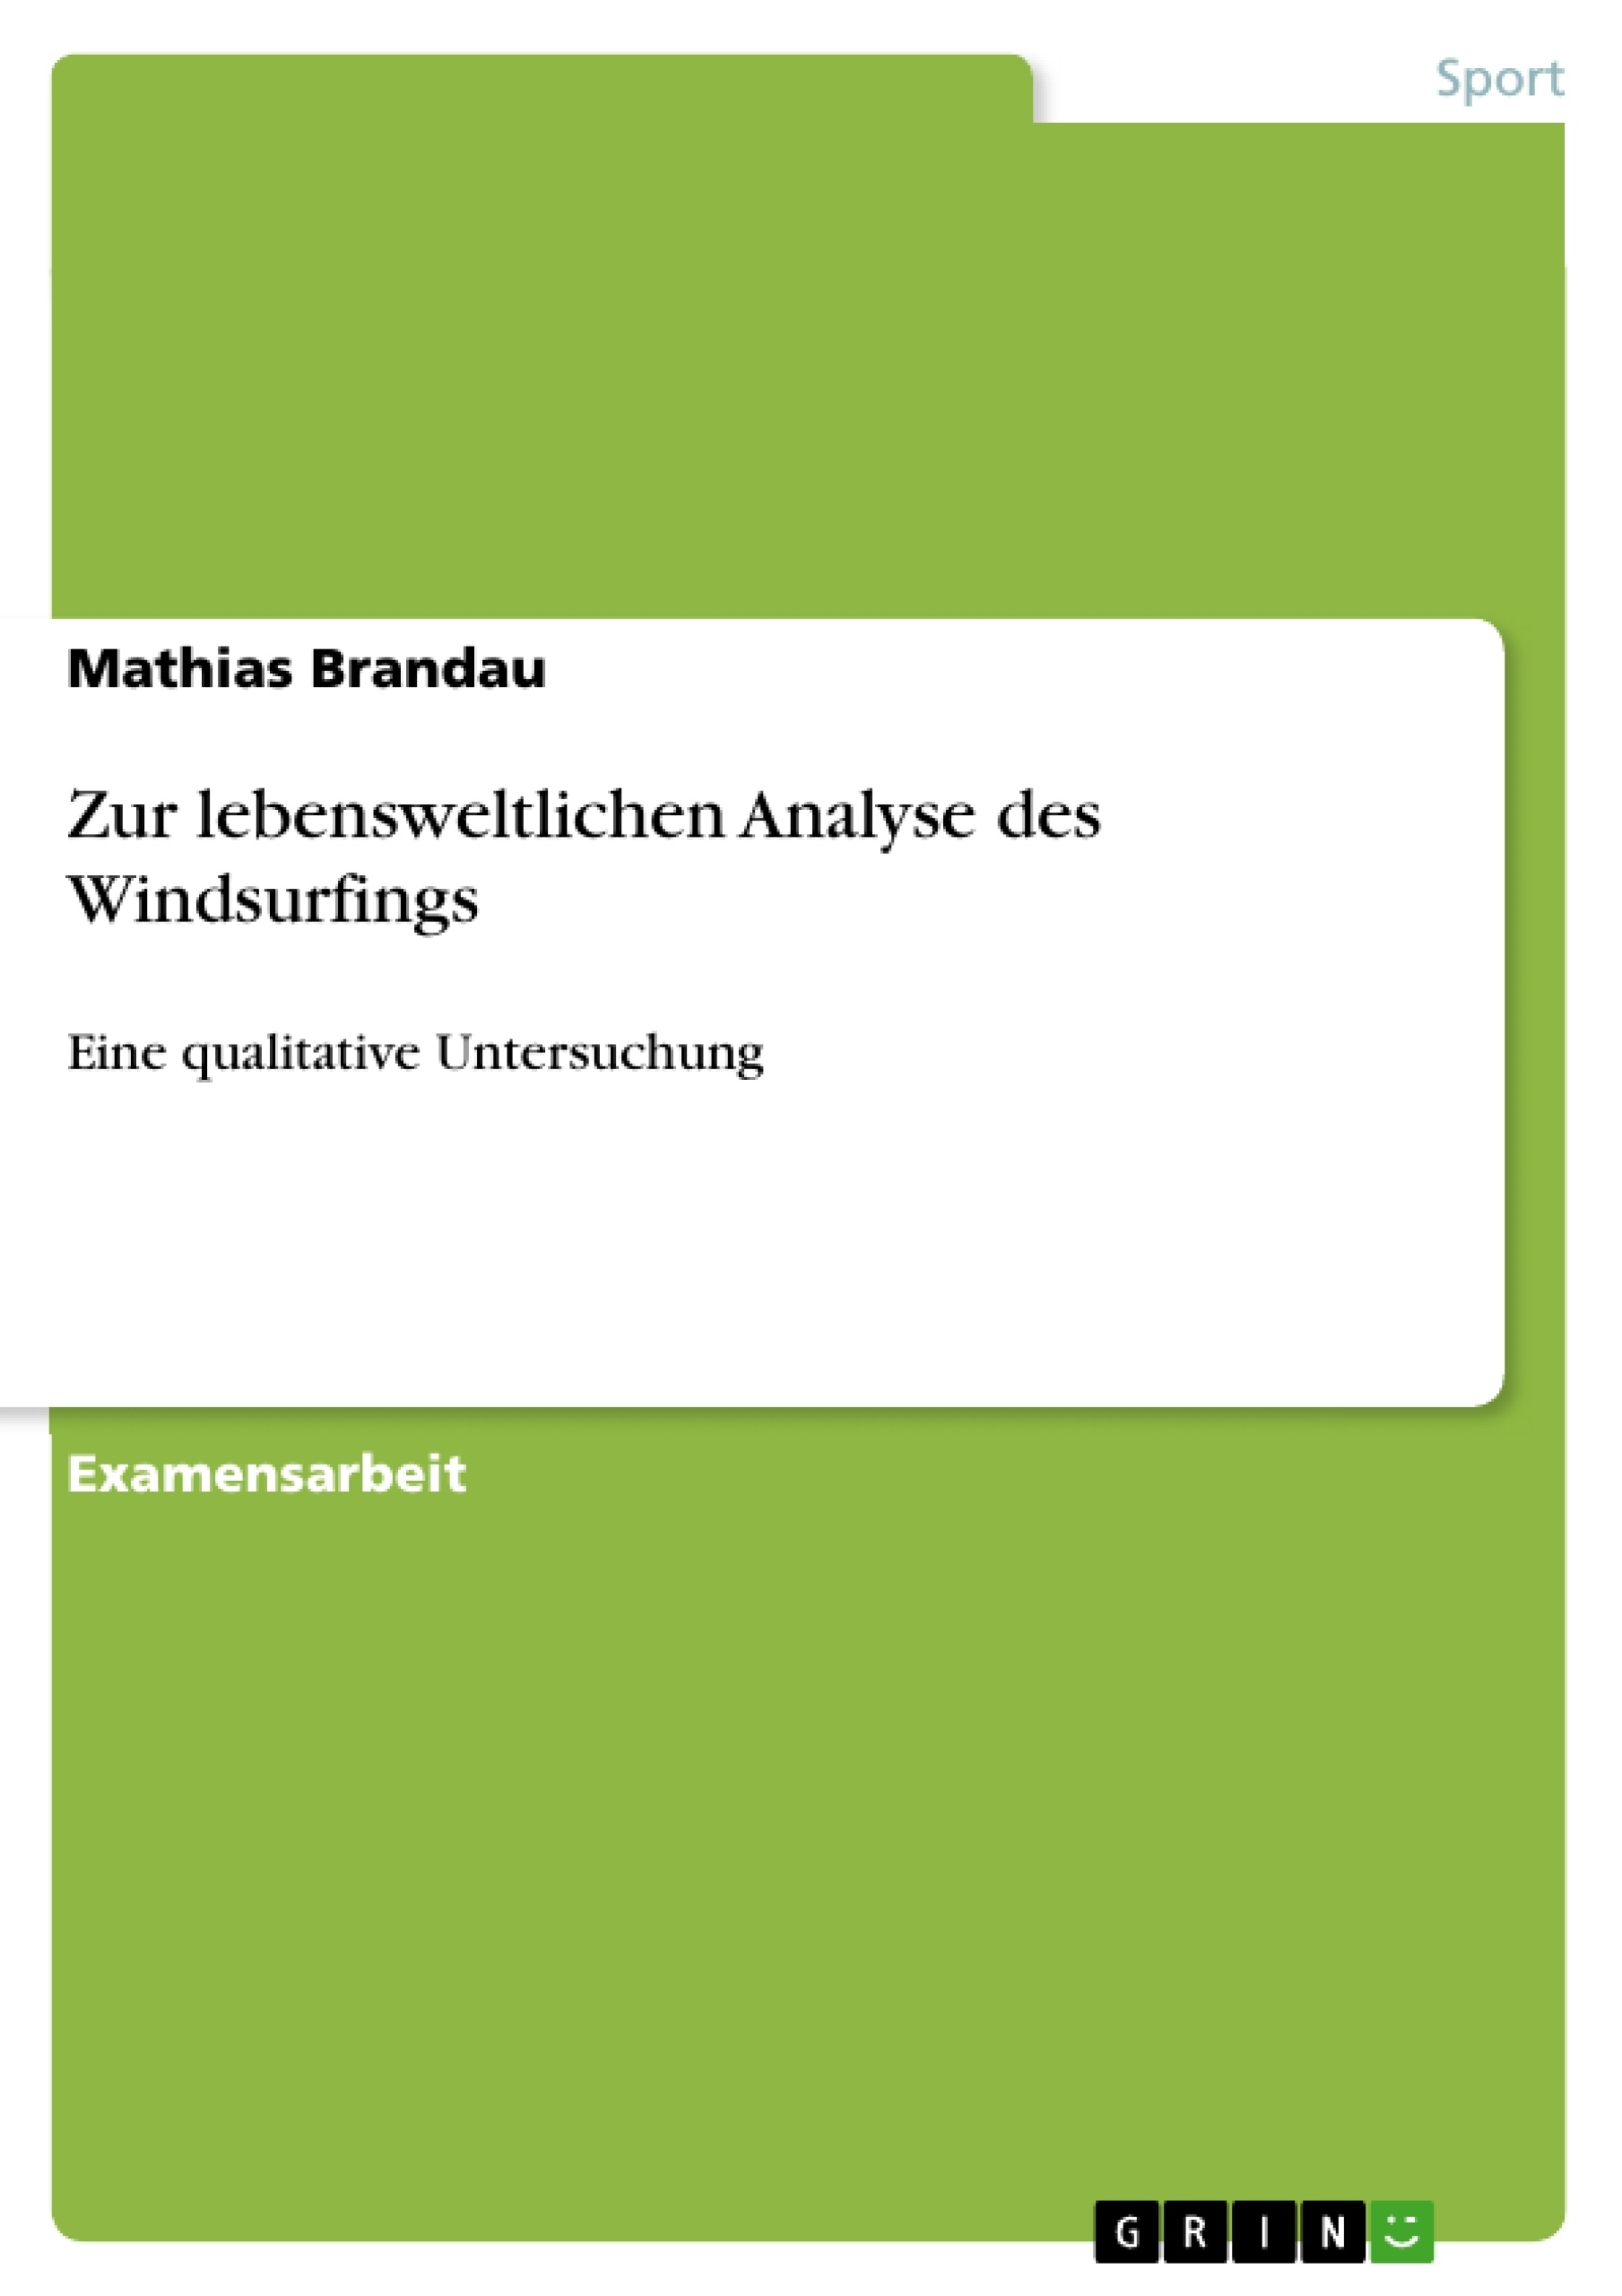 Title: Zur lebensweltlichen Analyse des Windsurfings